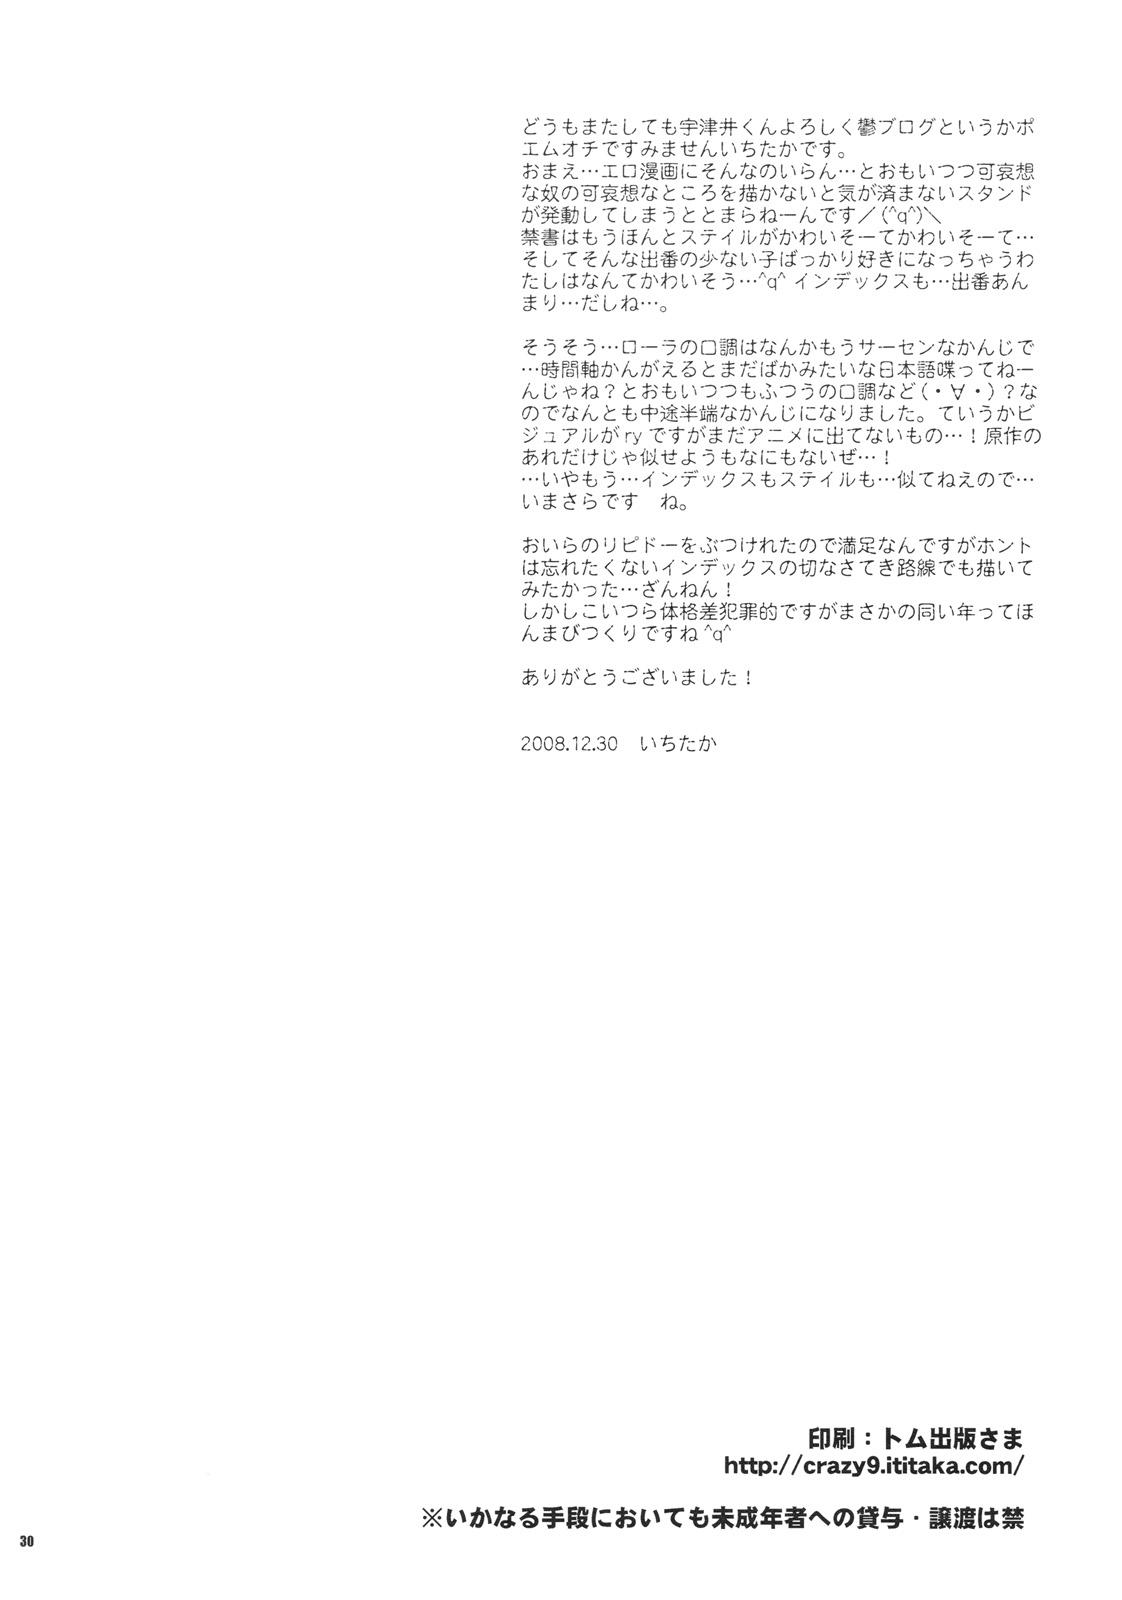 Dotado Saigo no Yoru ni - Toaru majutsu no index Para - Page 29